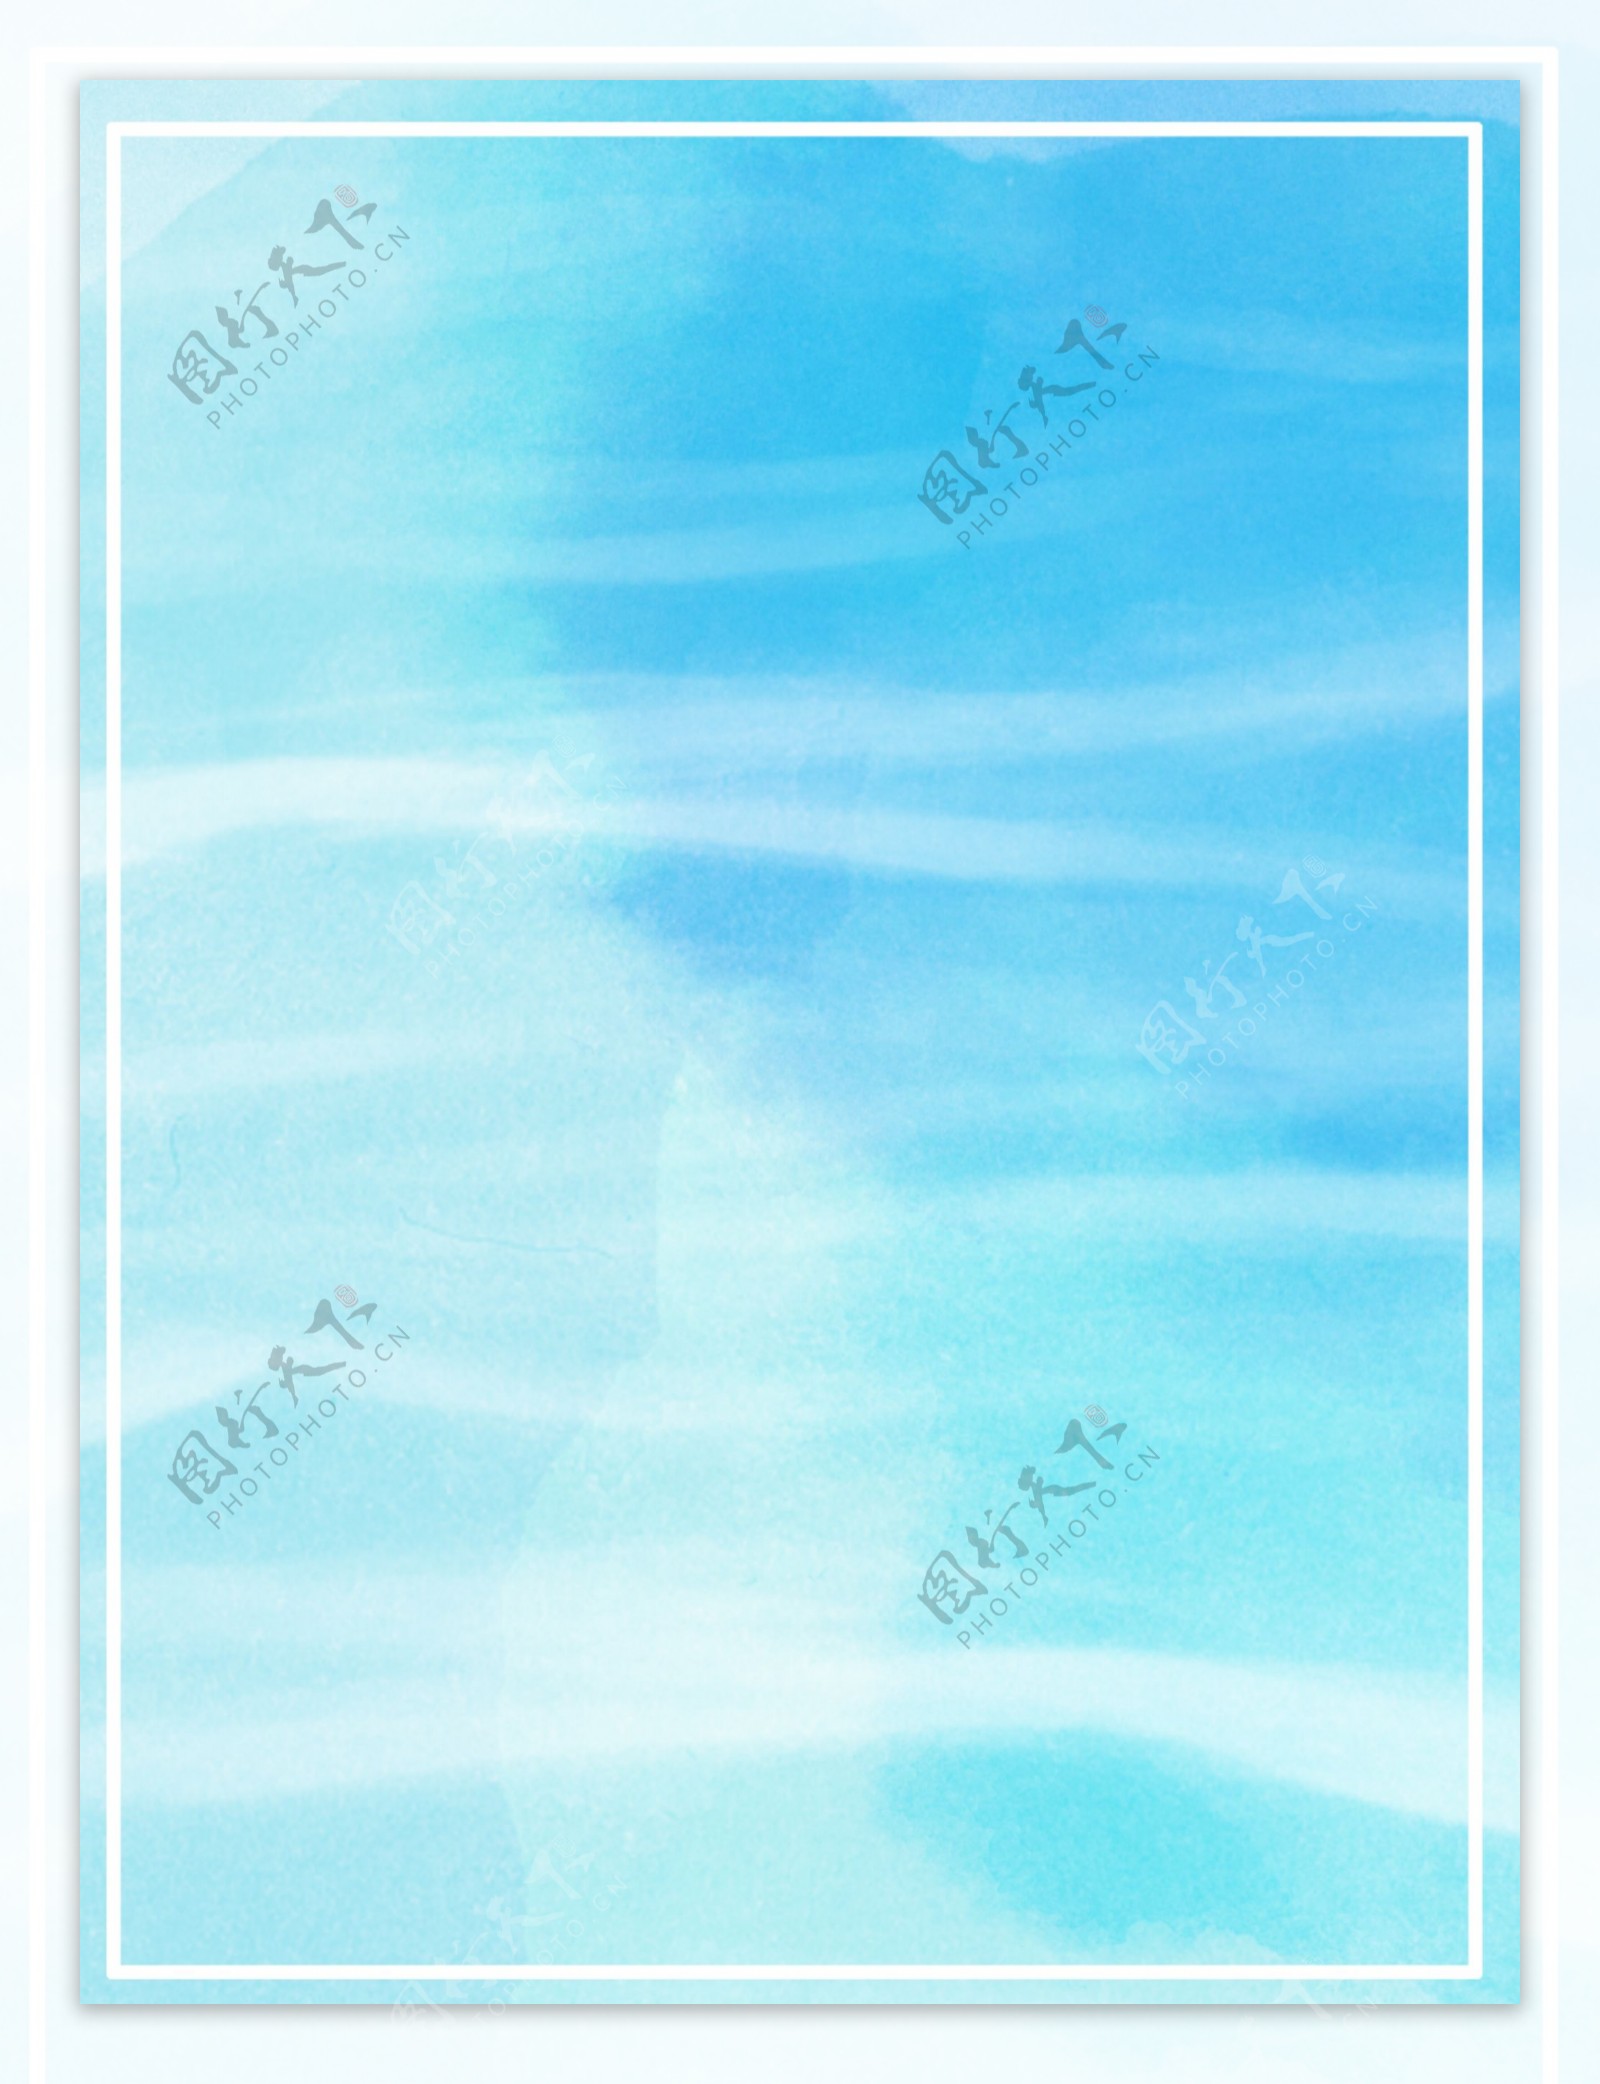 原创手绘淡雅海蓝色冰爽简约水彩背景素材